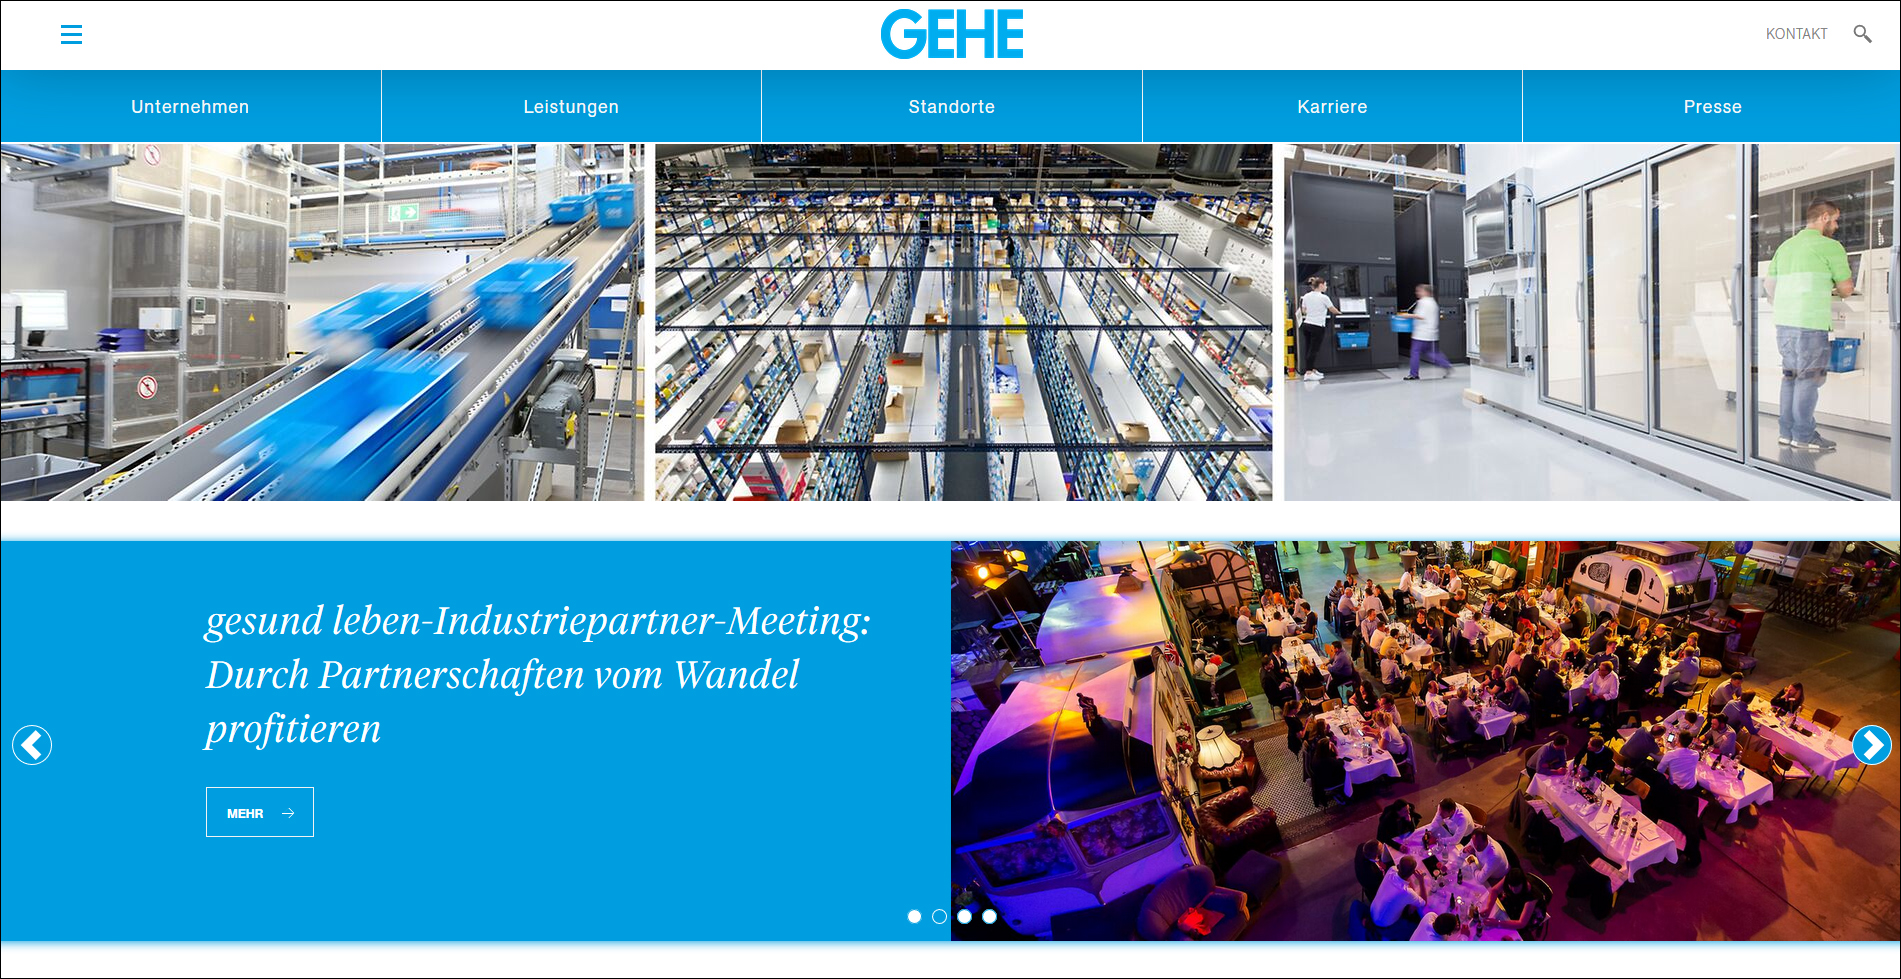 Relaunch von gehe.de: Neue Wege in der digitalen Kommunikation 